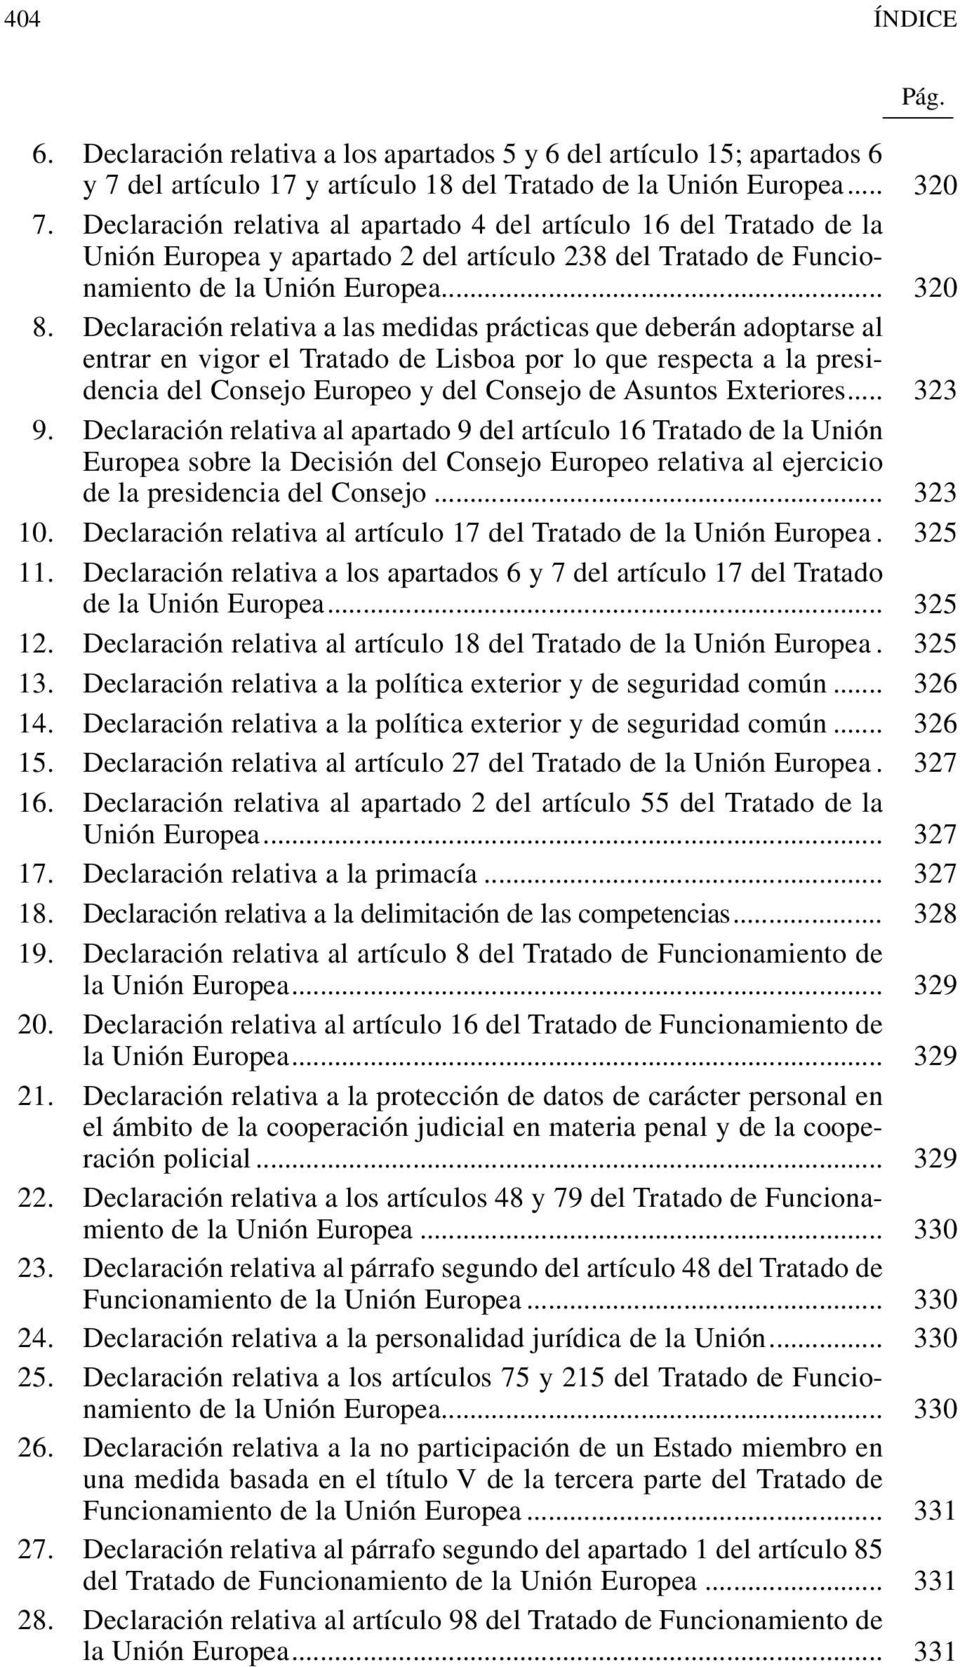 Declaración relativa a las medidas prácticas que deberán adoptarse al entrar en vigor el Tratado de Lisboa por lo que respecta a la presidencia del Consejo Europeo y del Consejo de Asuntos Exteriores.